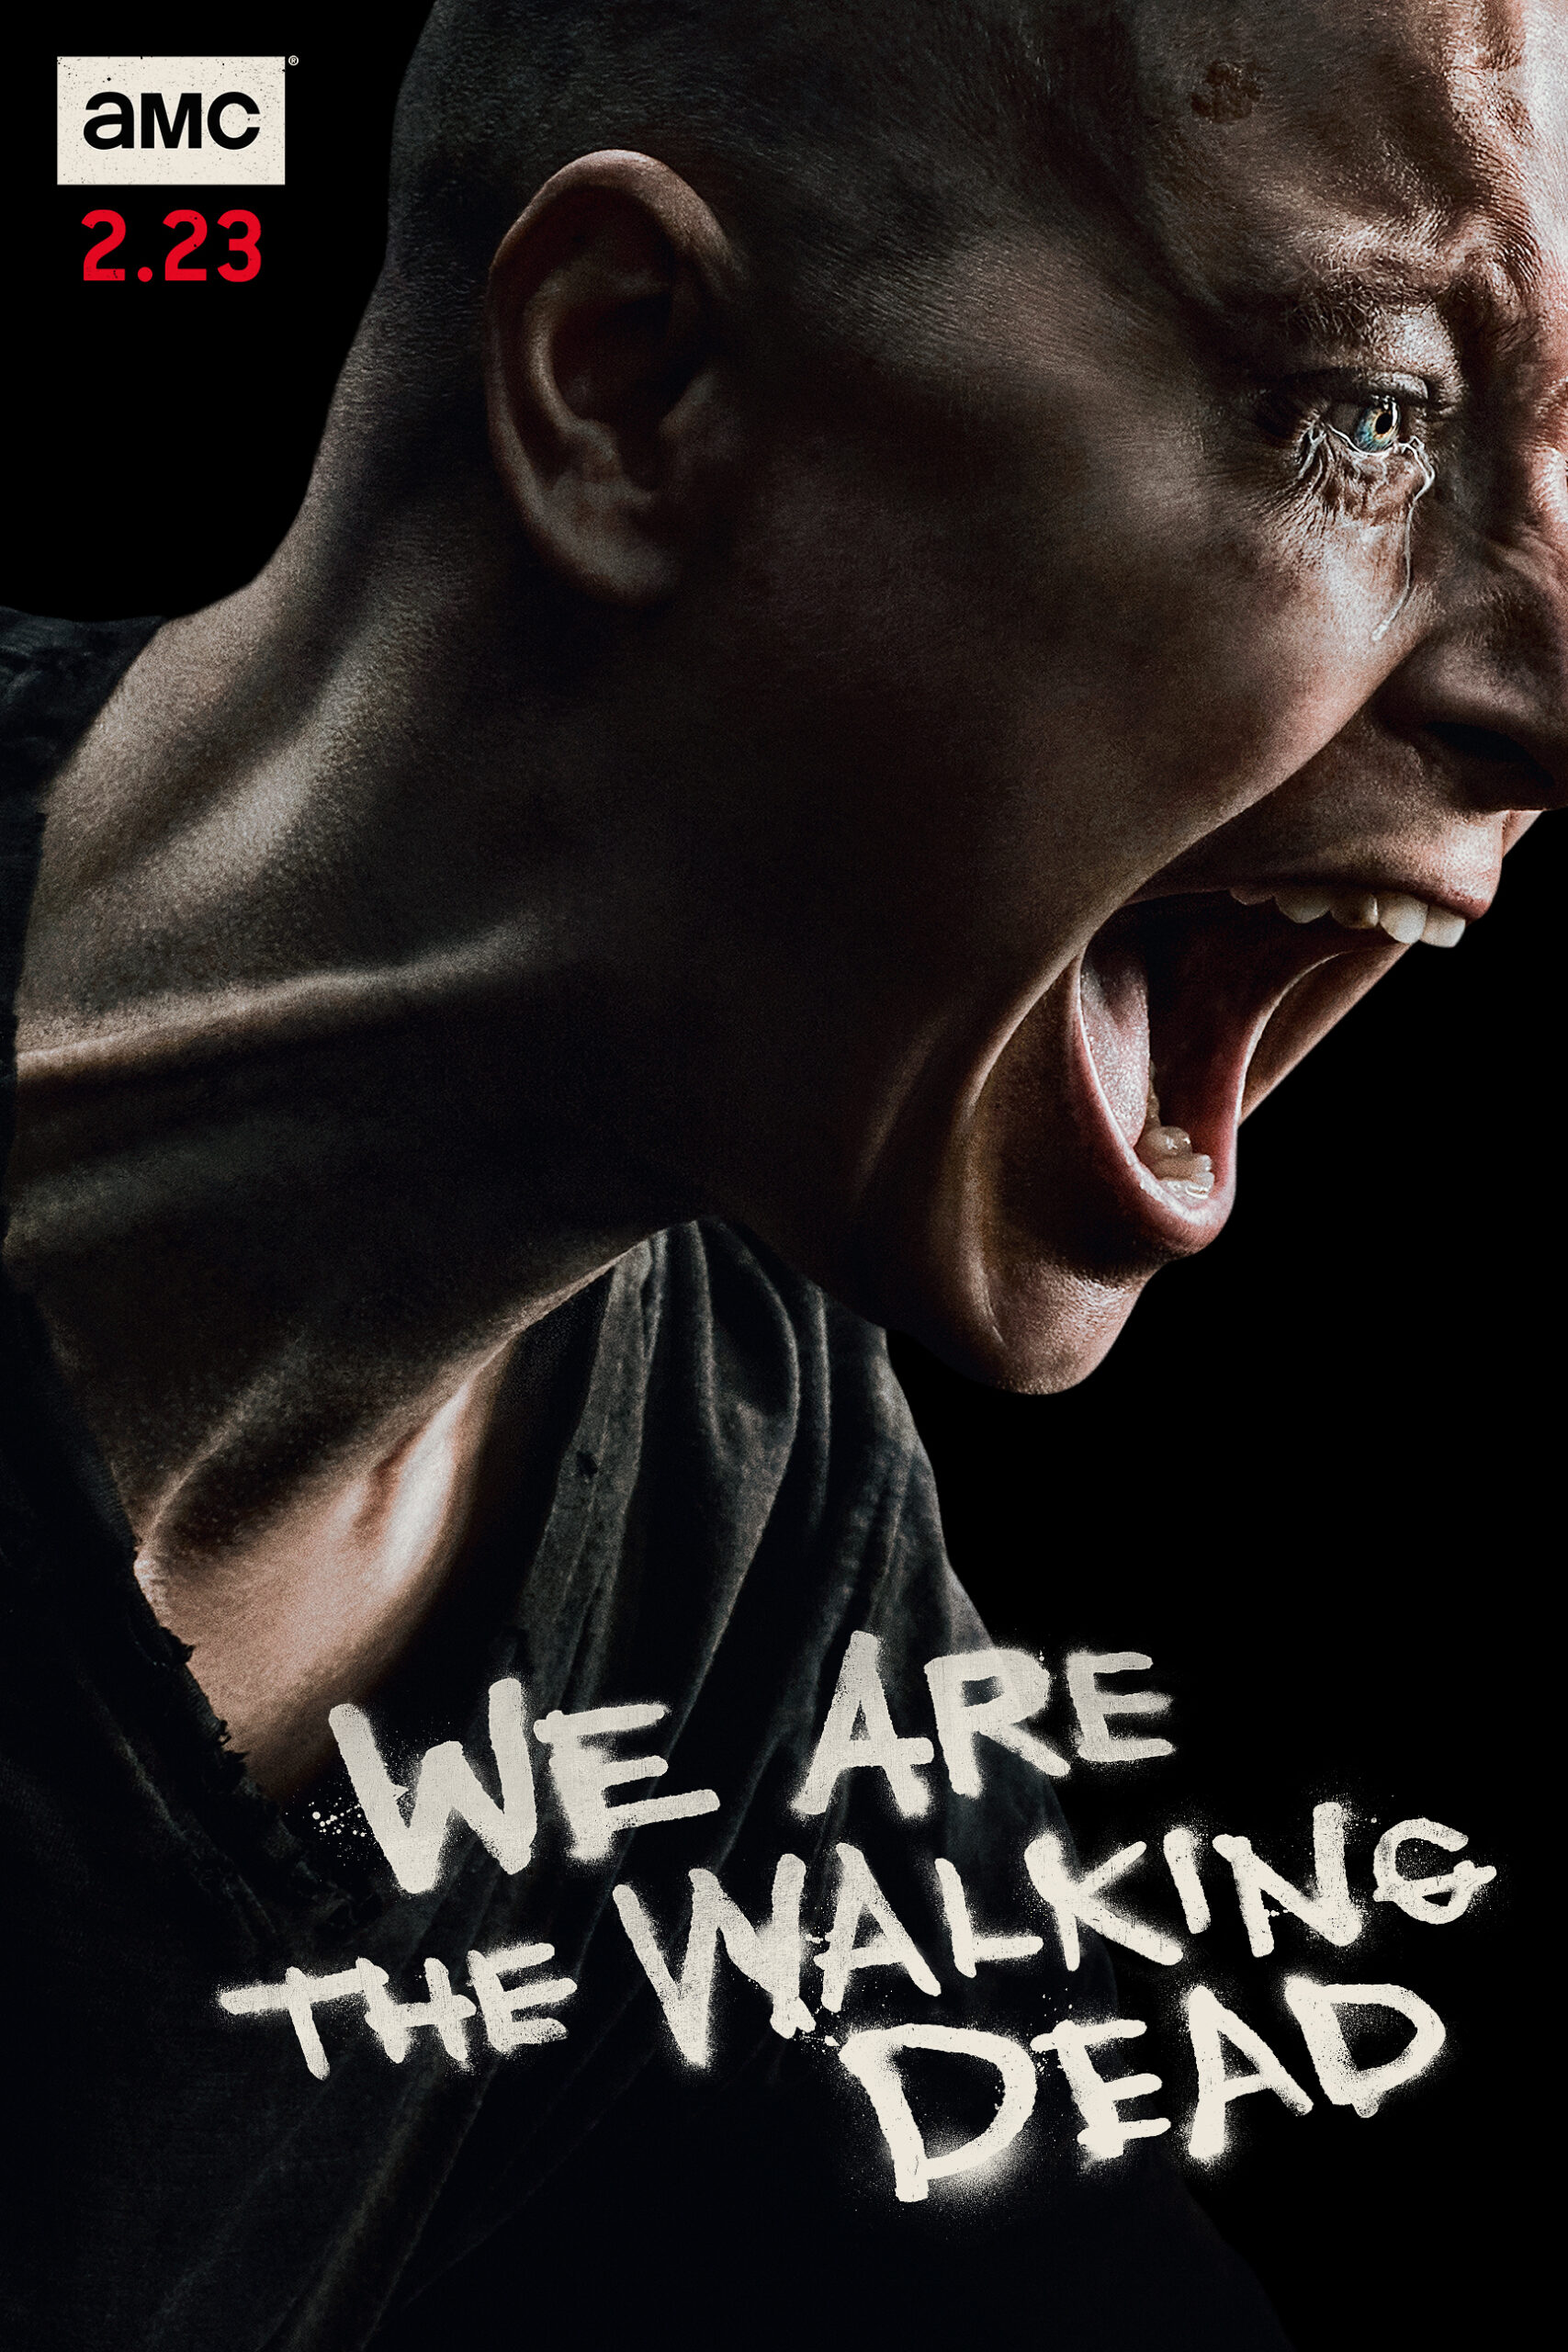 ดูหนังออนไลน์ฟรี The Walking Dead Season 4 EP9 เดอะวอล์กกิงเดด ปี4 ตอนที่9 [[Sub Thai]]